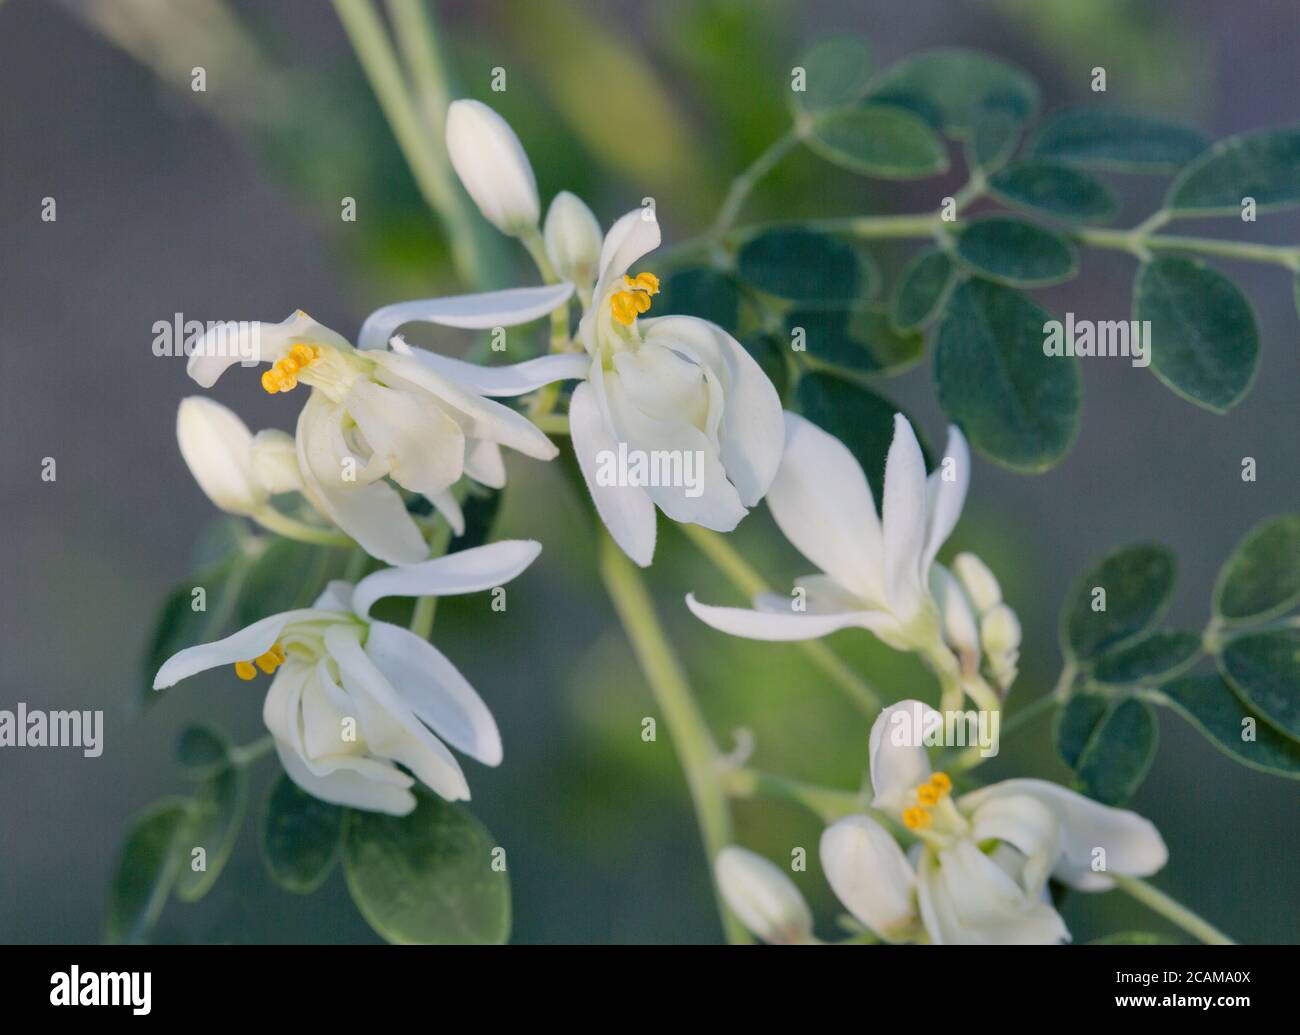 Blumen, Moringa 'Moringa oleifera' blühend, heimisch im tropischen & subtropischen Klima Indiens. Stockfoto